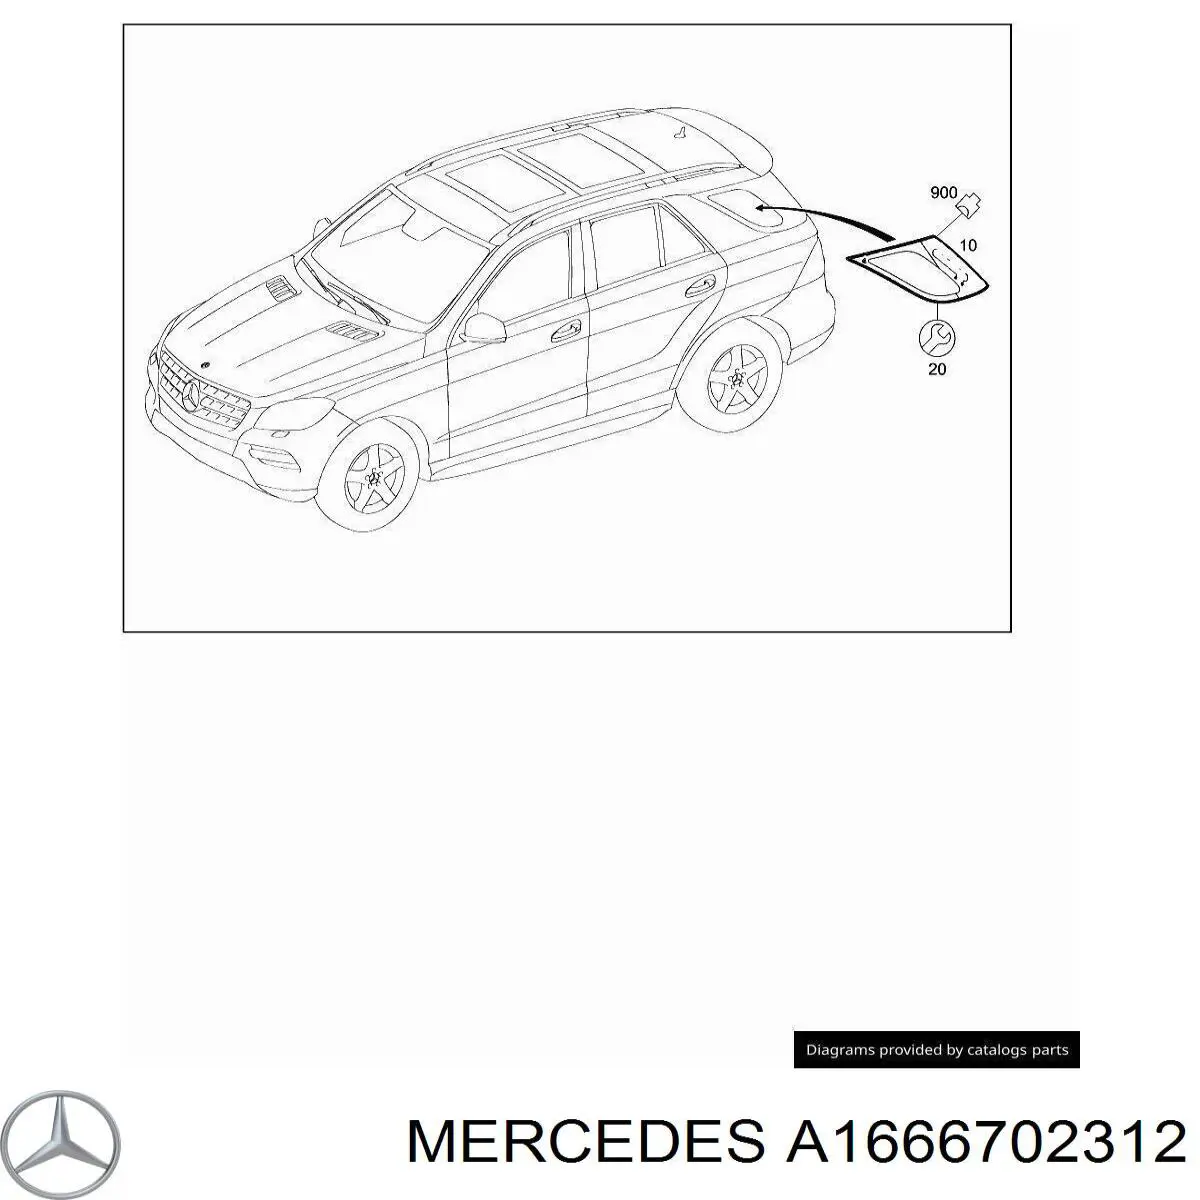 A1666702312 Mercedes ventanilla costado superior izquierda (lado maletero)